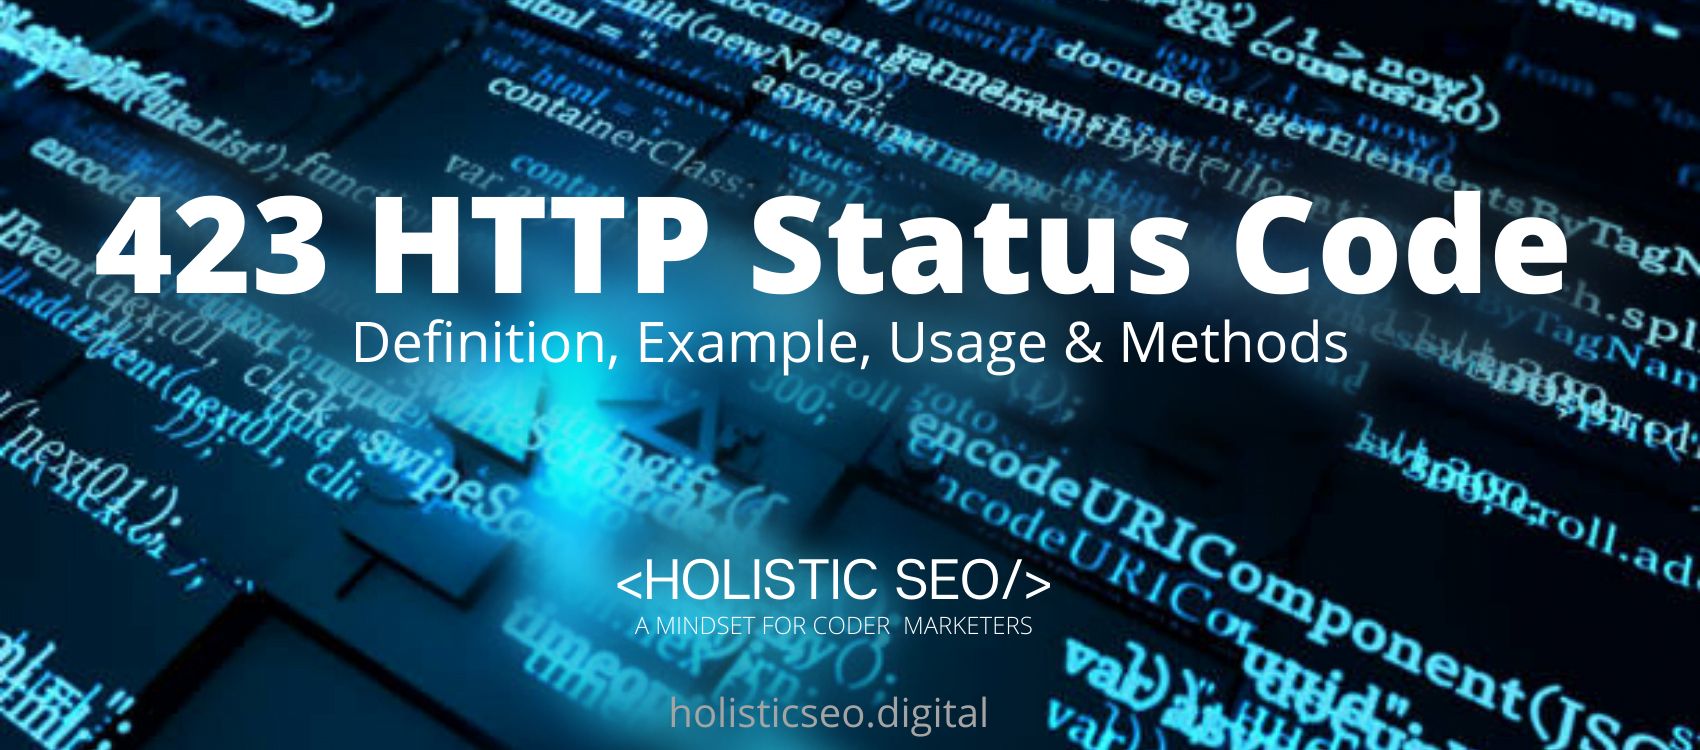 423 HTTP Status Code